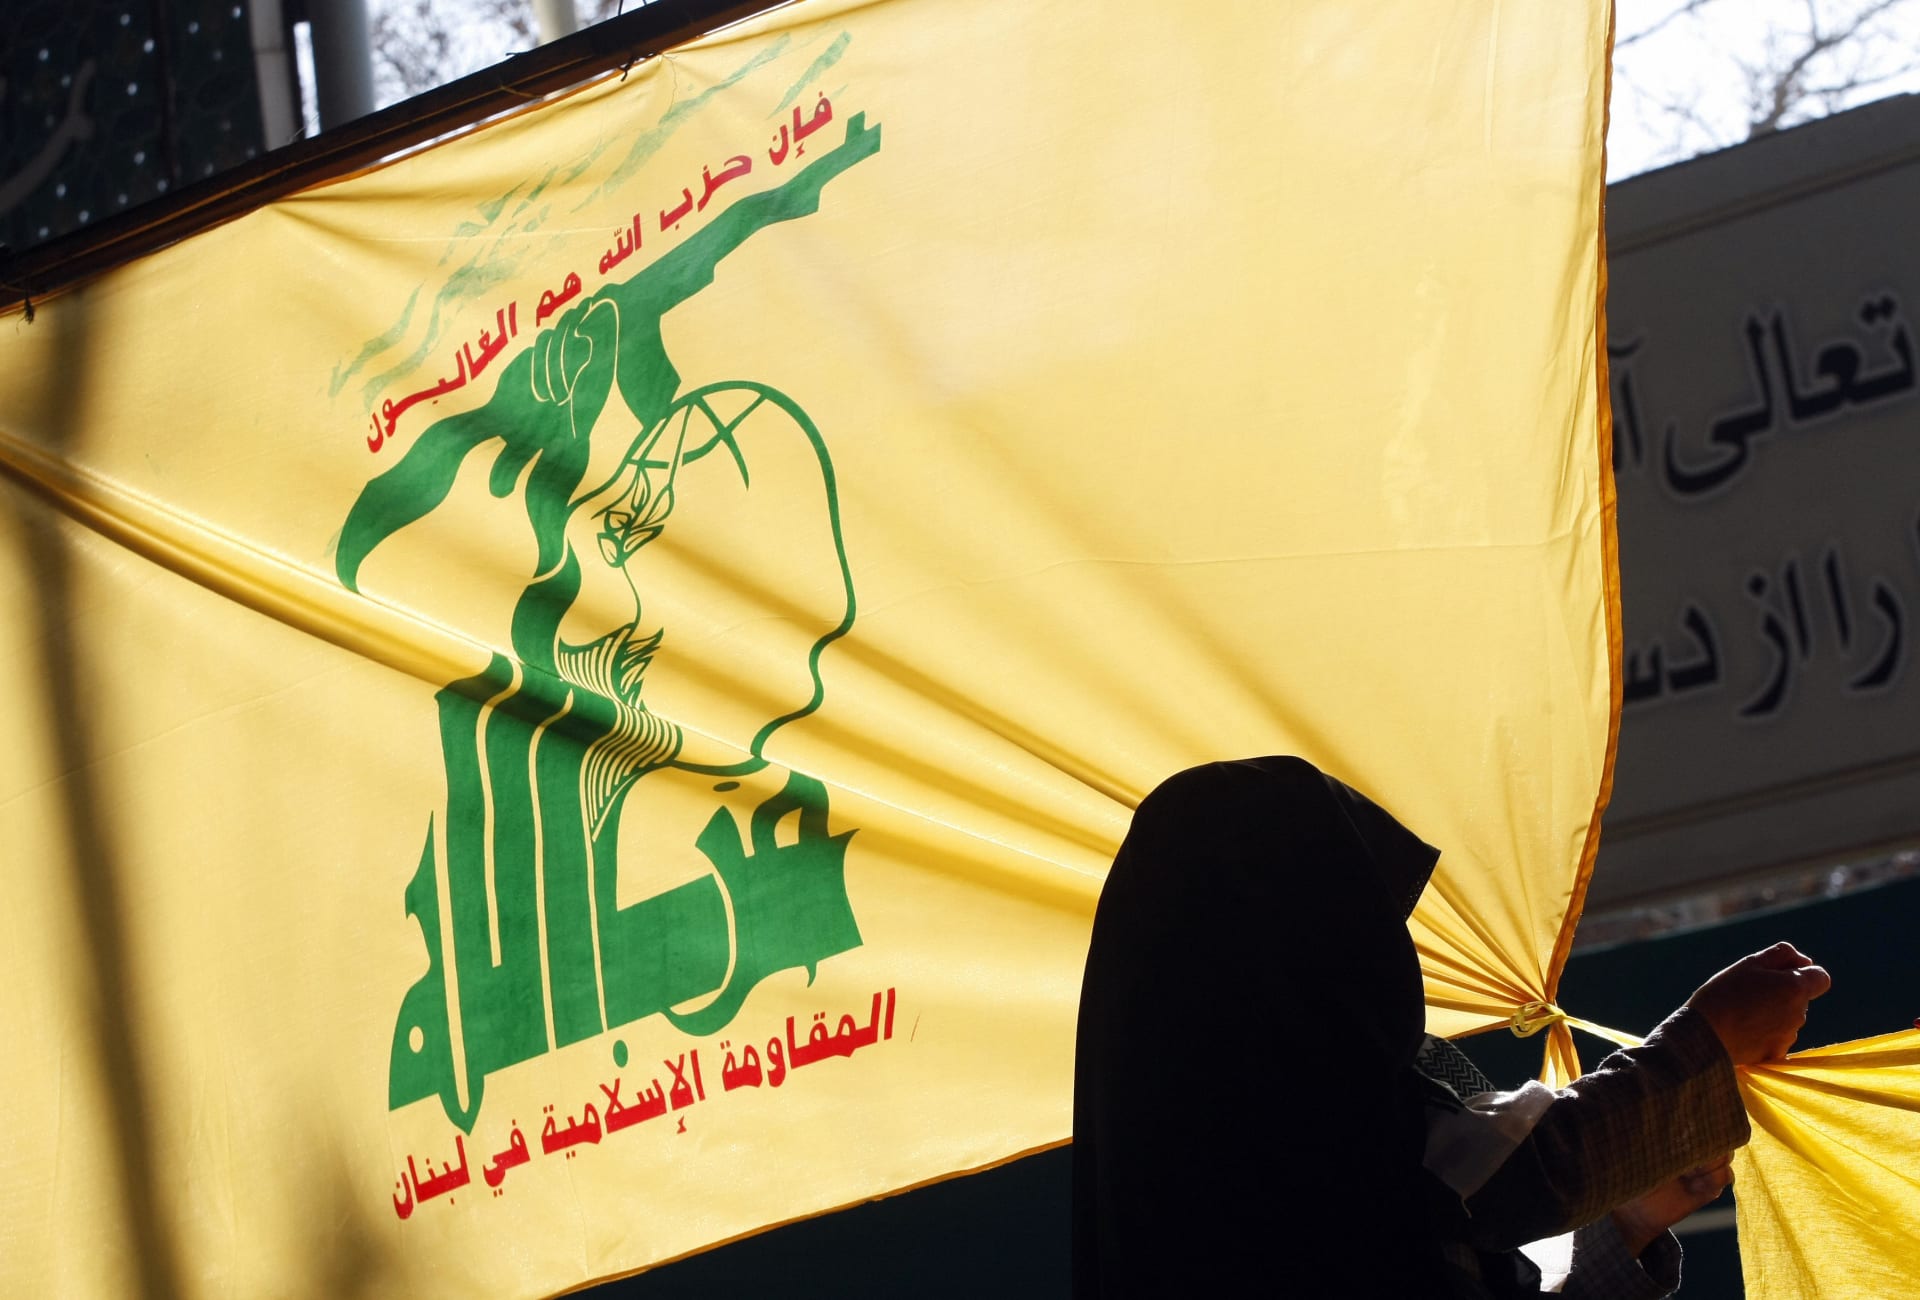 أمير سعودي يقترح رفع علم حزب الله على سفارات لبنان مع "يد توزع المخدرات"